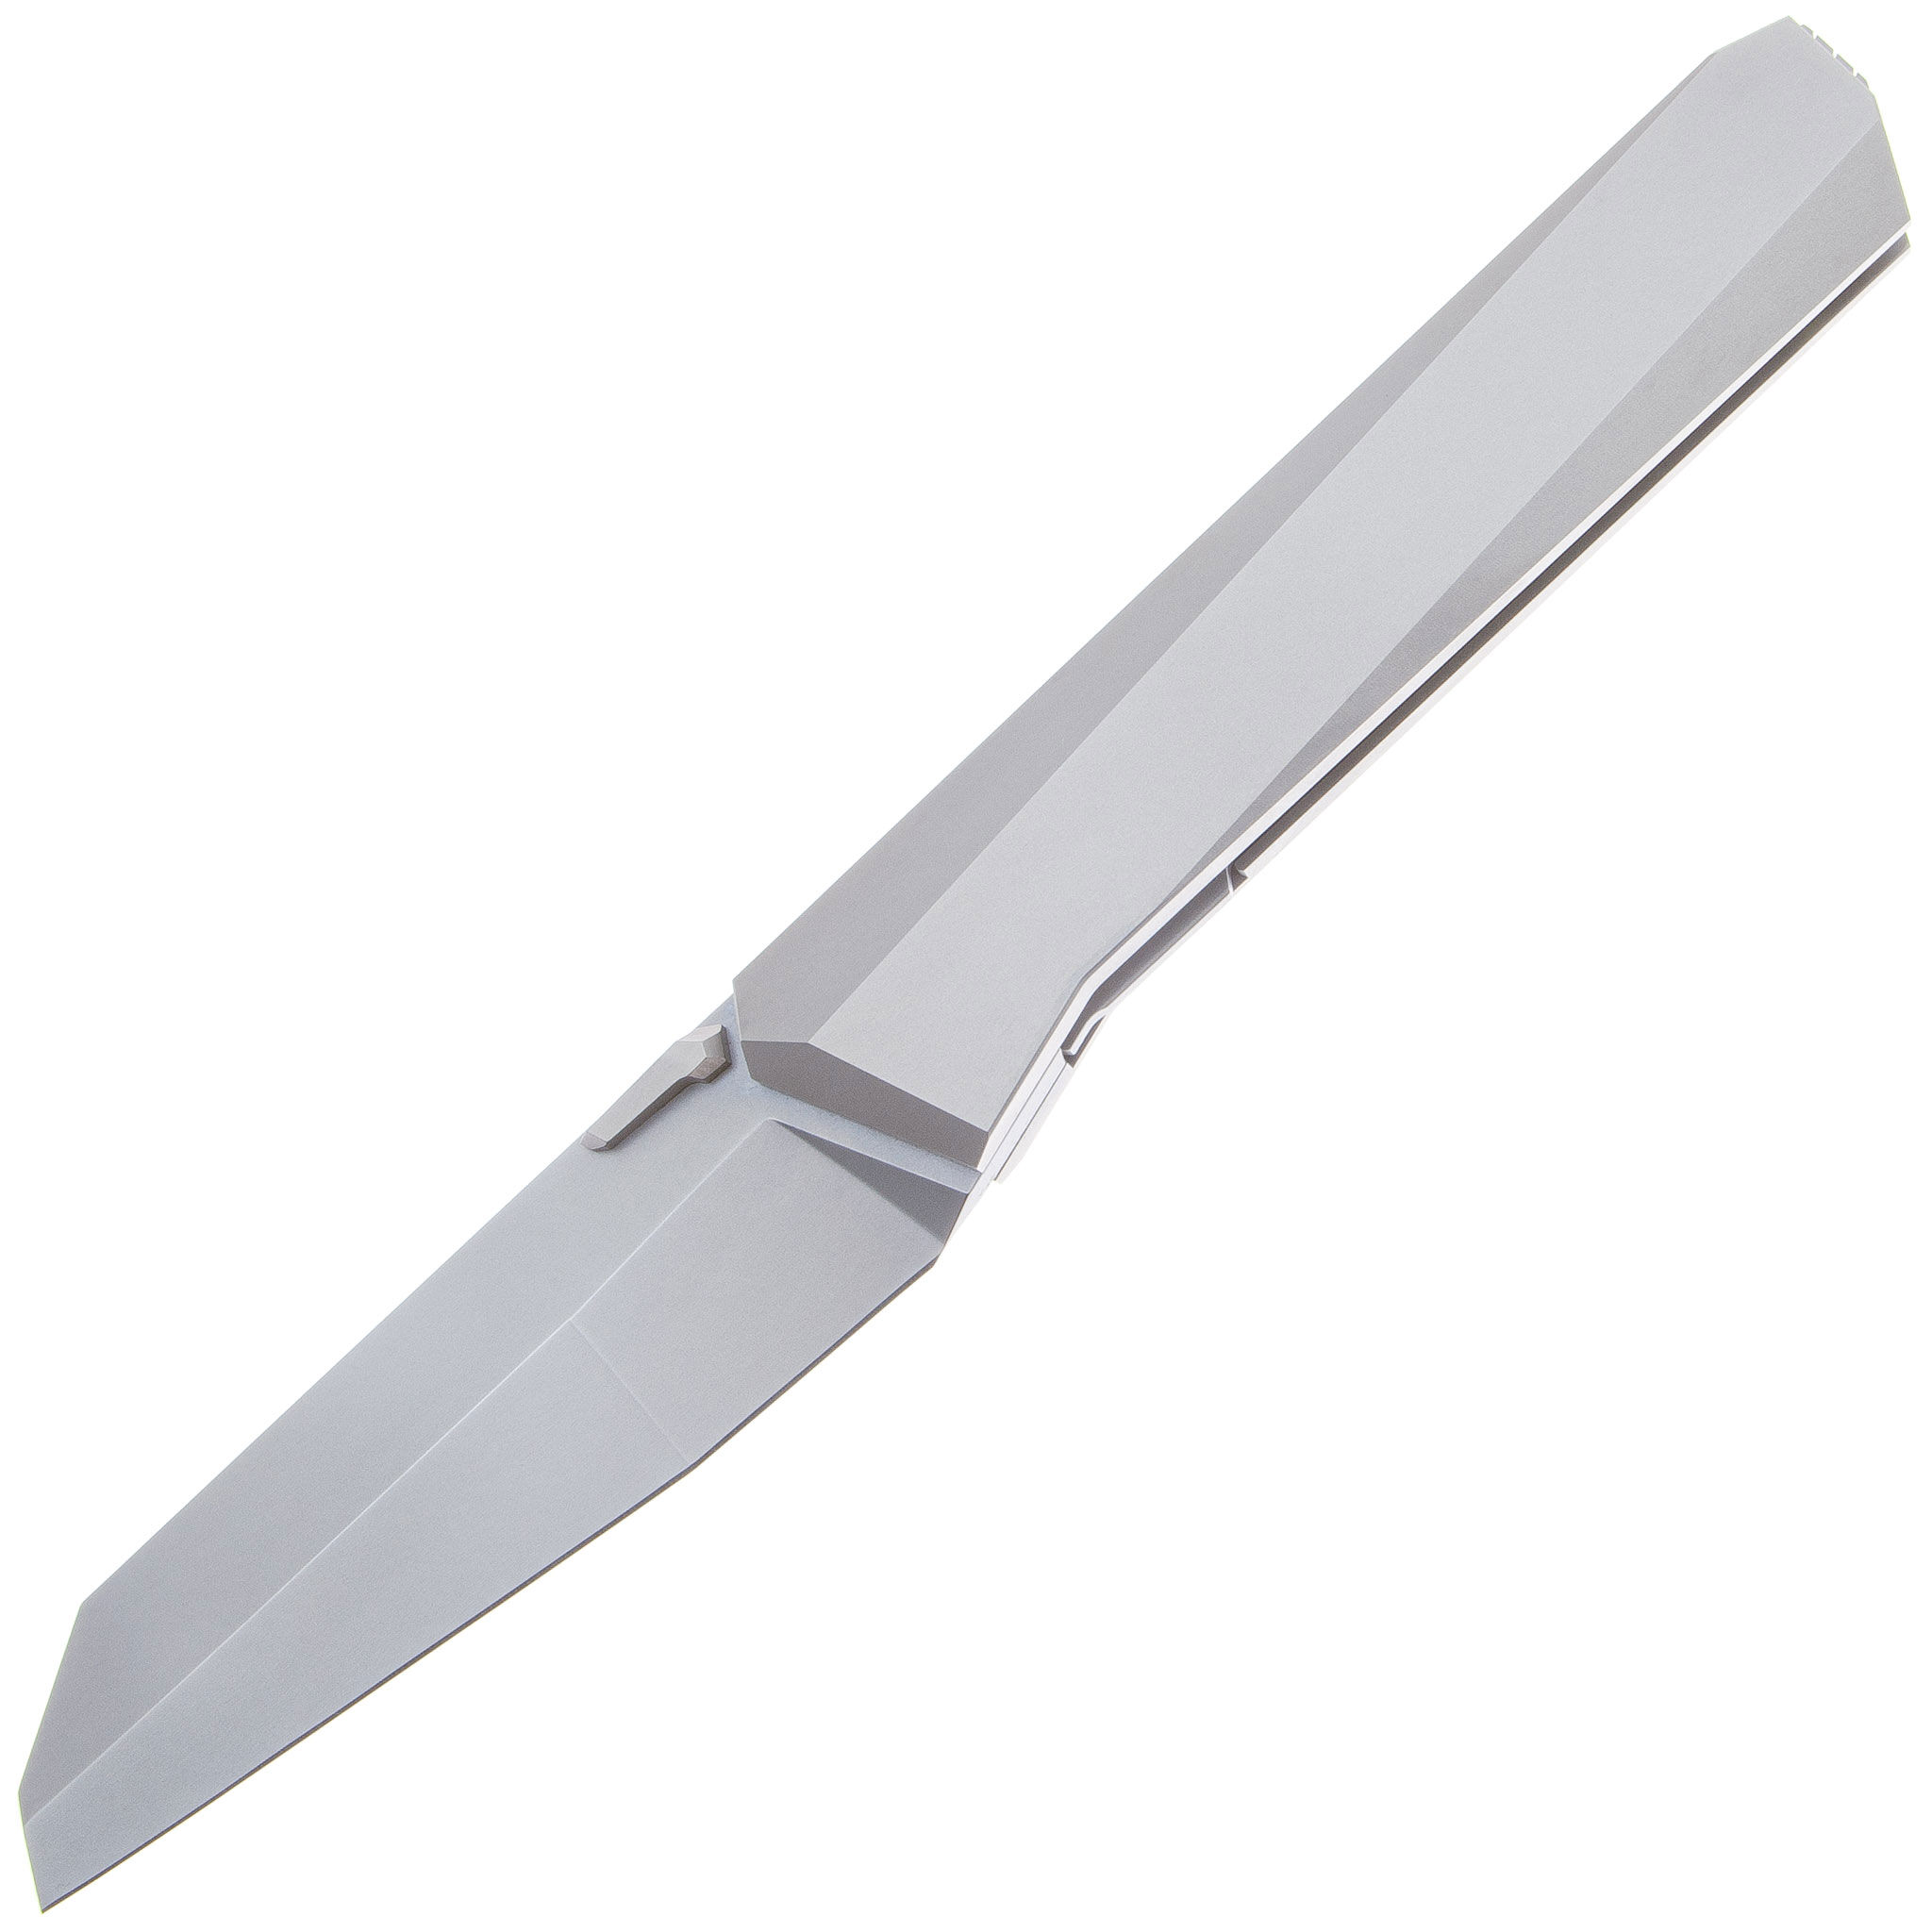 Материалы рукояток современных ножей